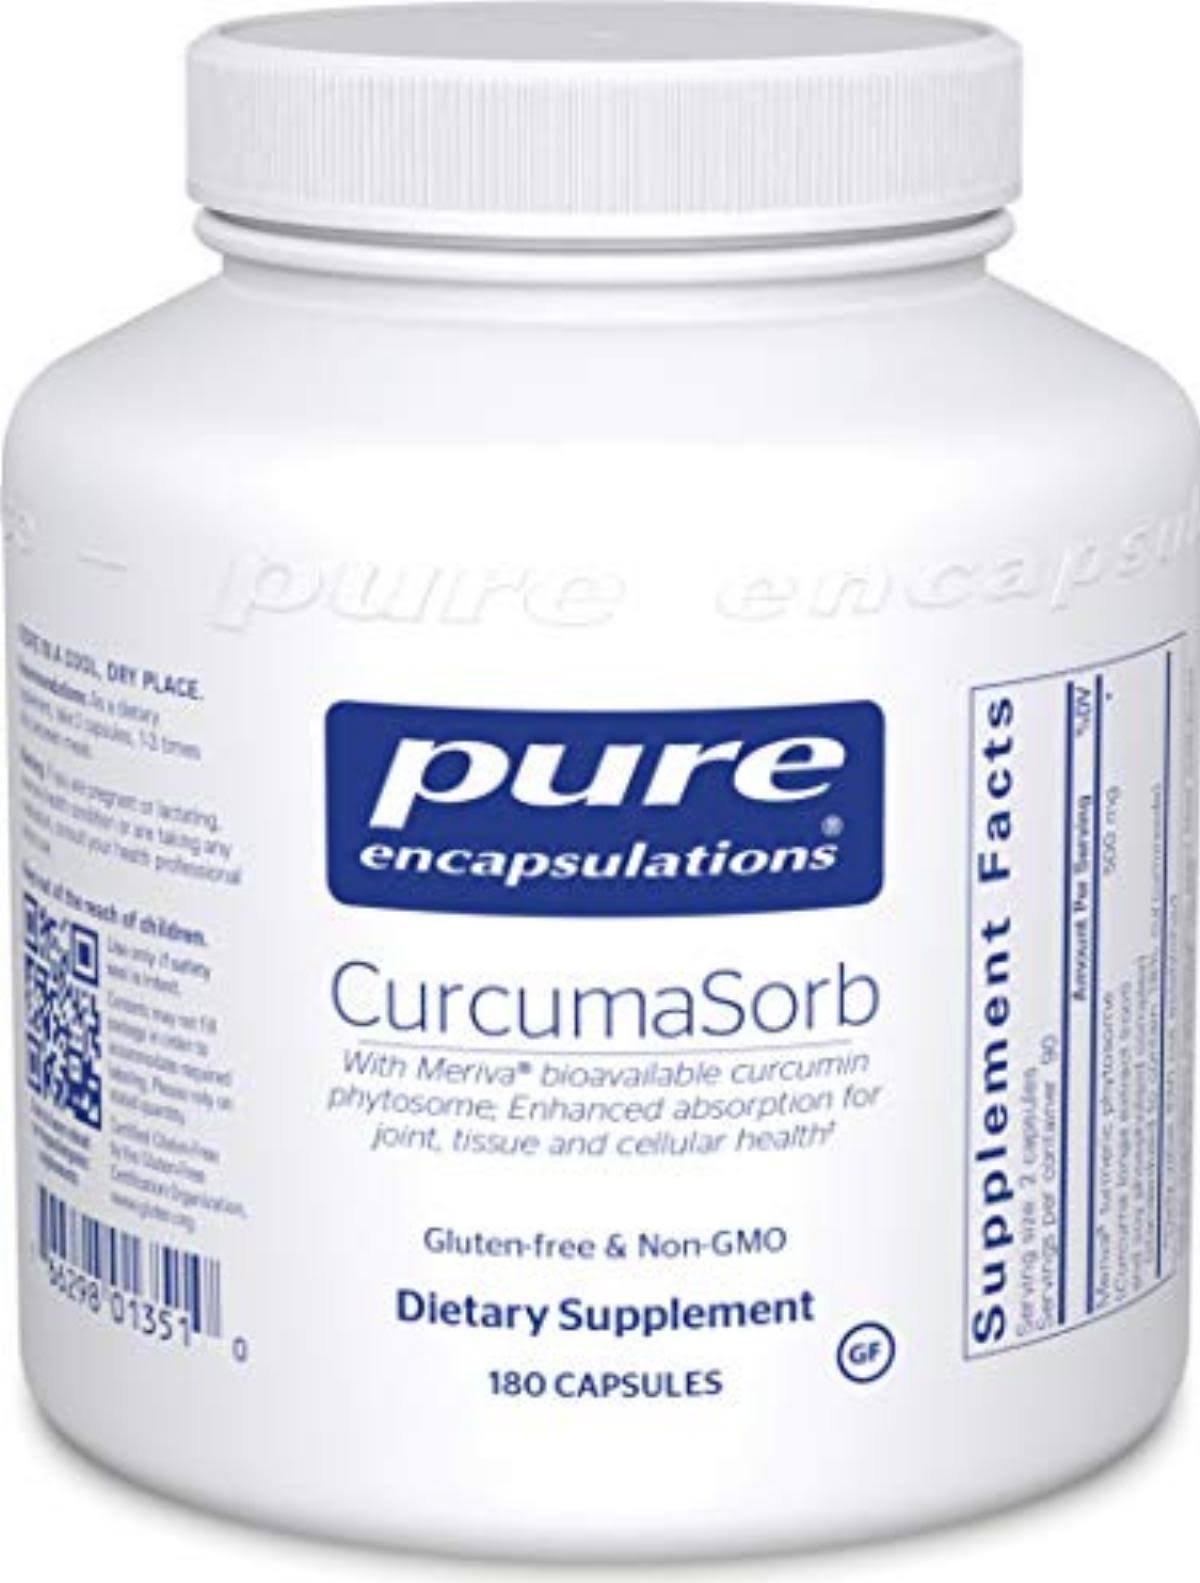 Pure Encapsulations CurcumaSorb Capsules - x180